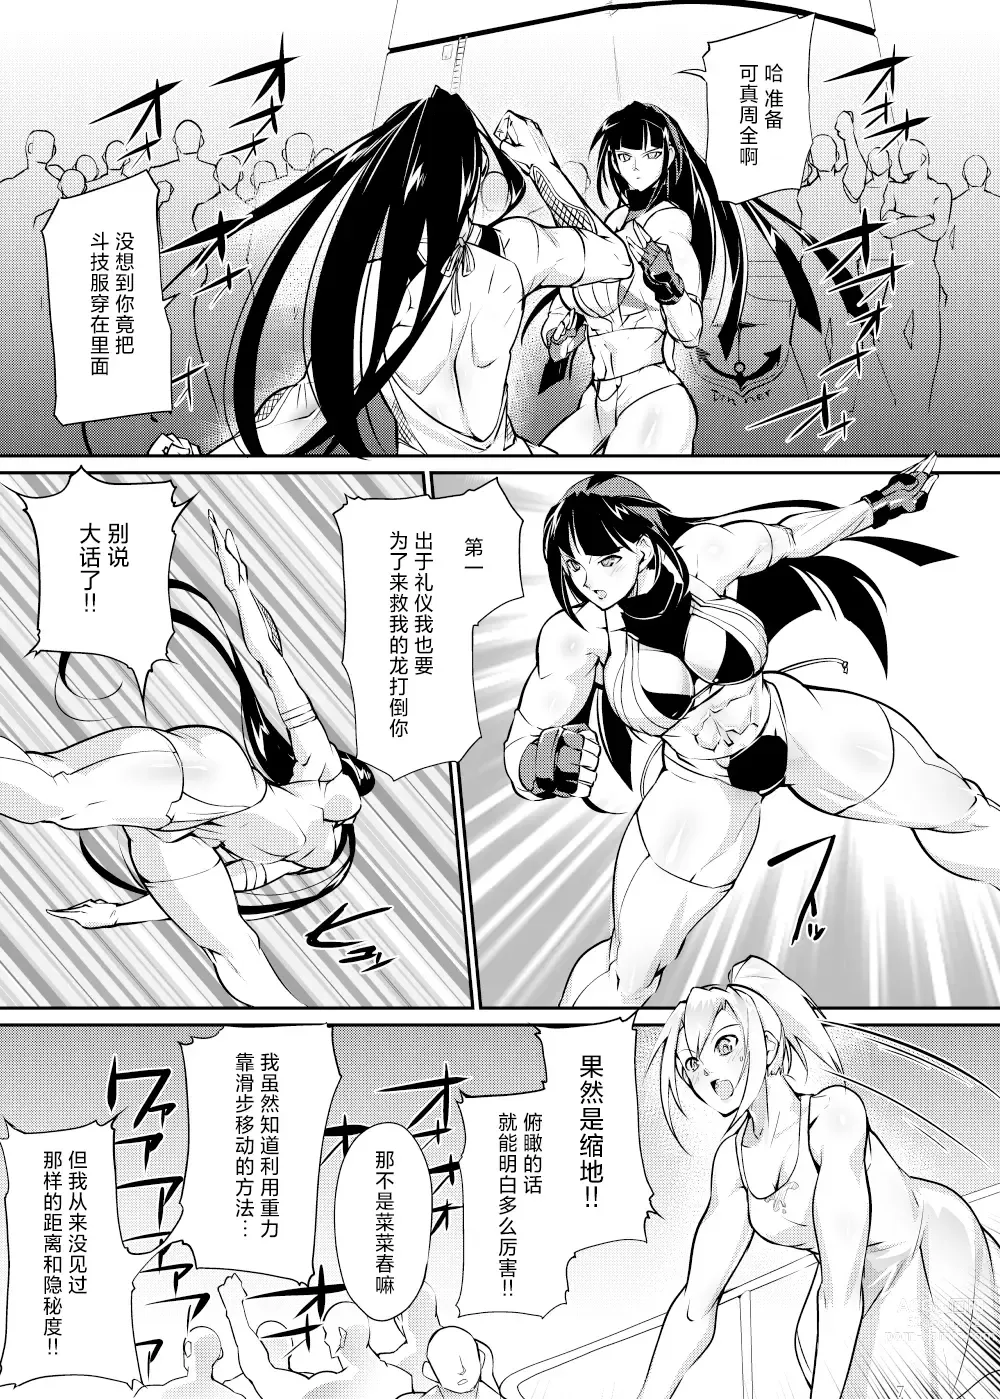 Page 6 of doujinshi Tougijou Rin - Arena Rin 6